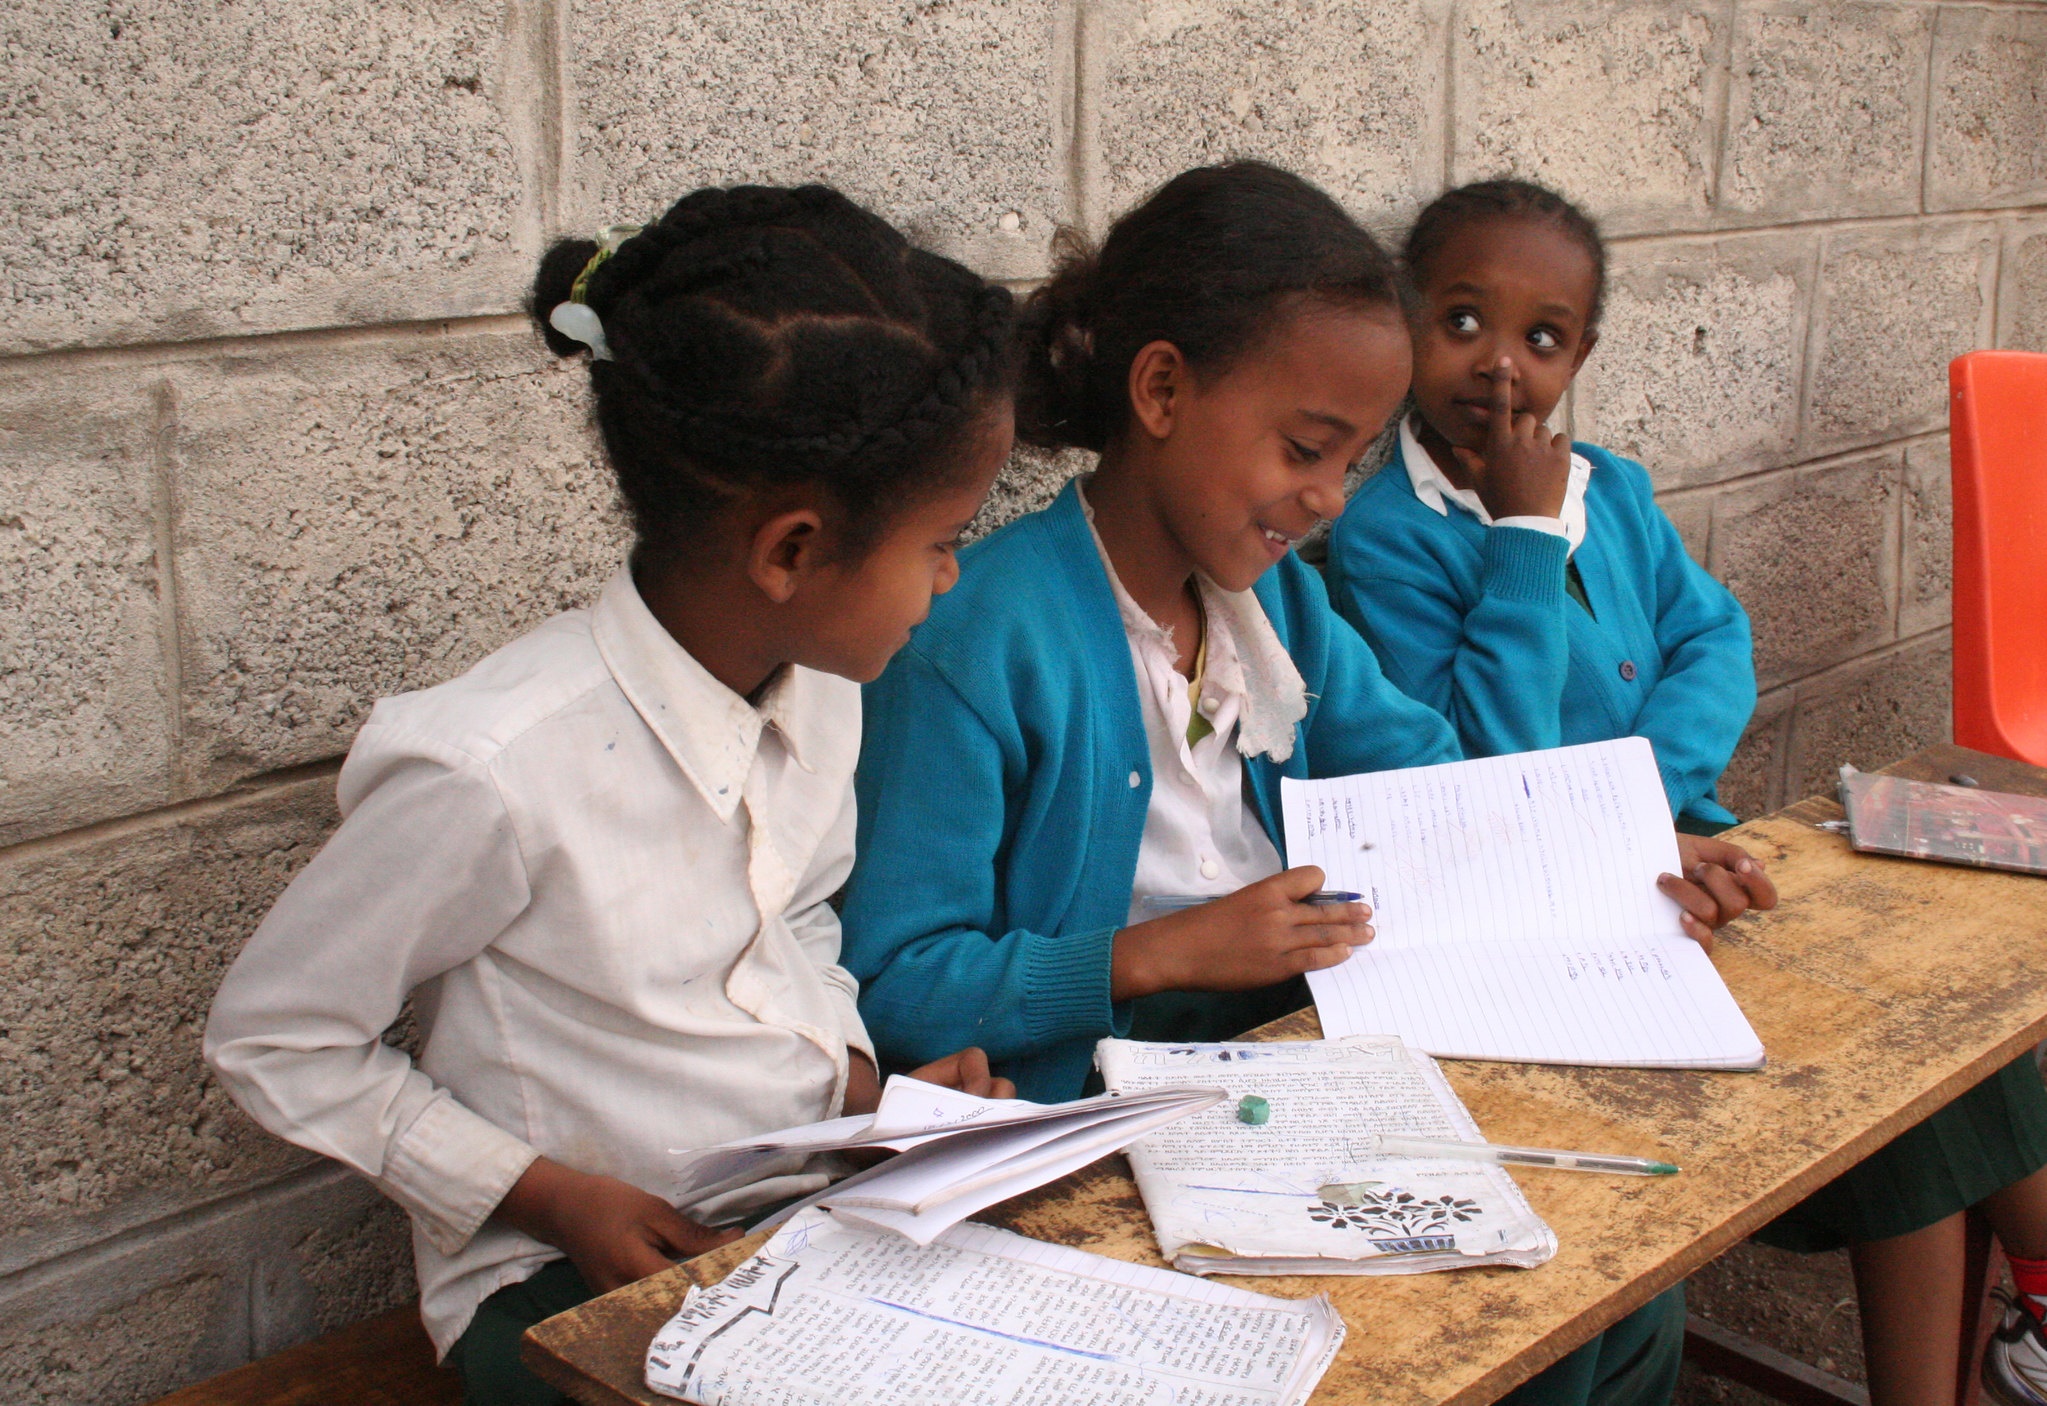  Ethiopian children in school